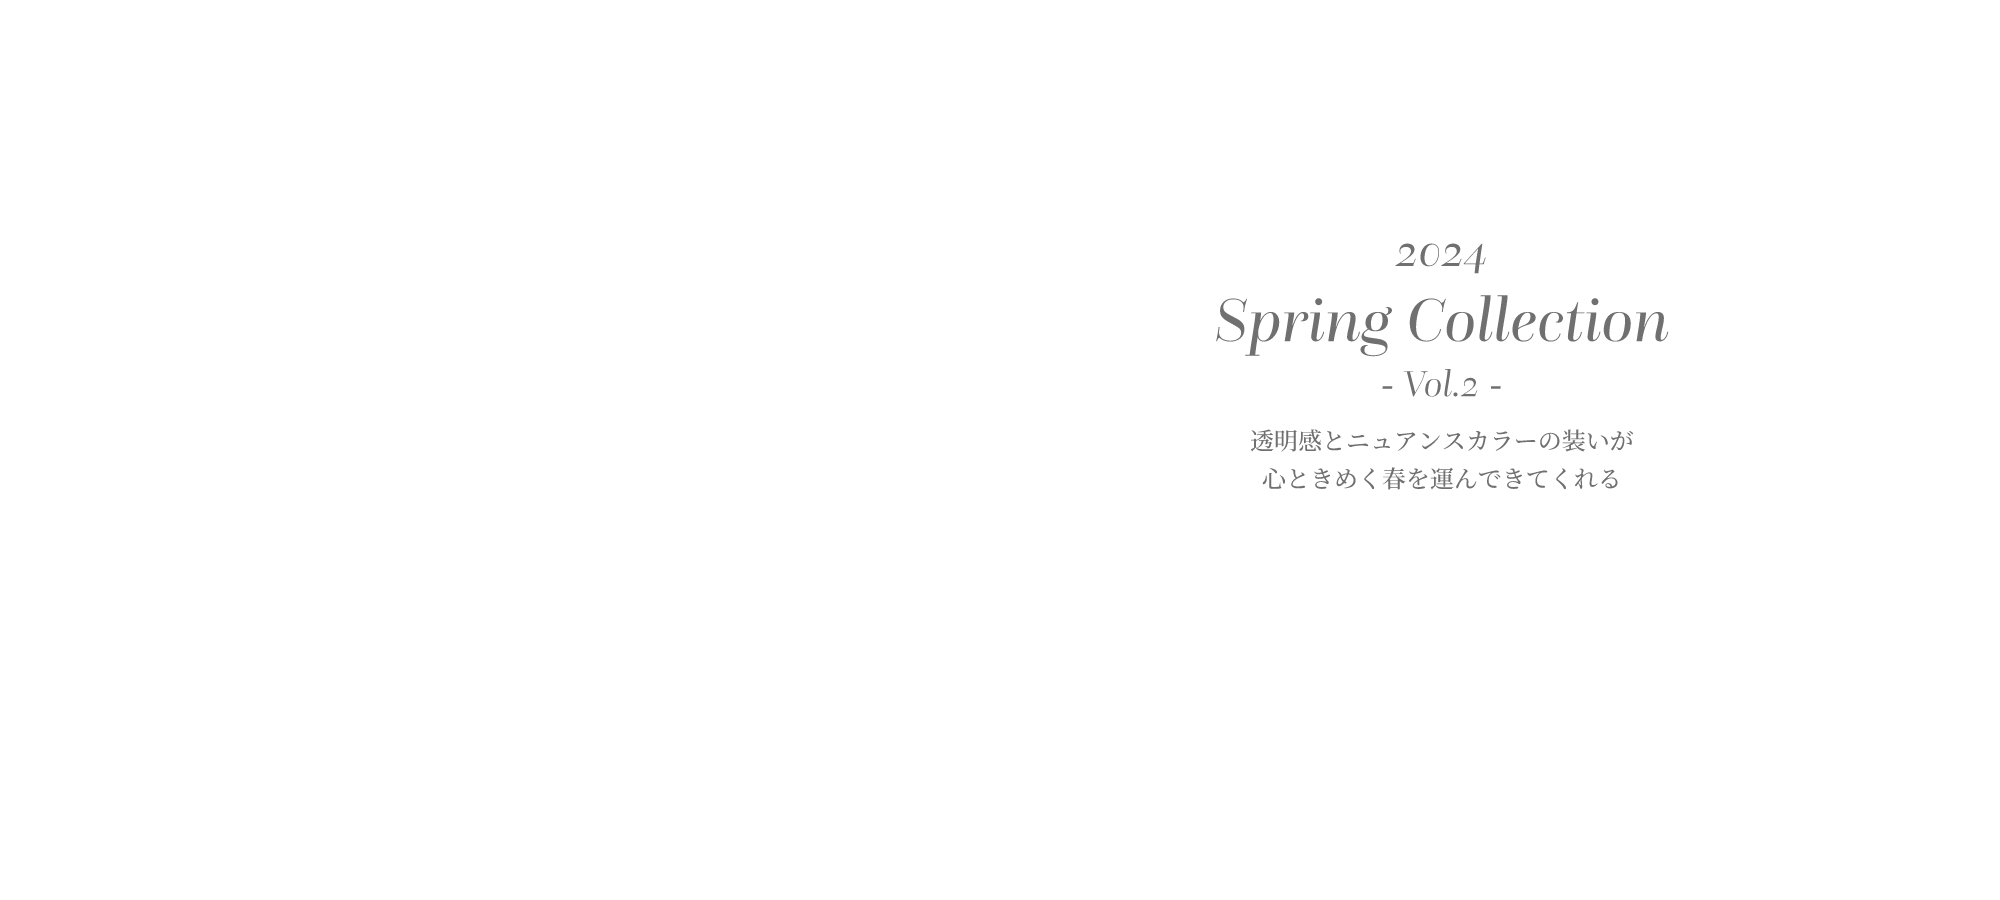 2024 Spring Collection- Vol.2 -透明感とニュアンスカラーの装いが心ときめく春を運んできてくれる